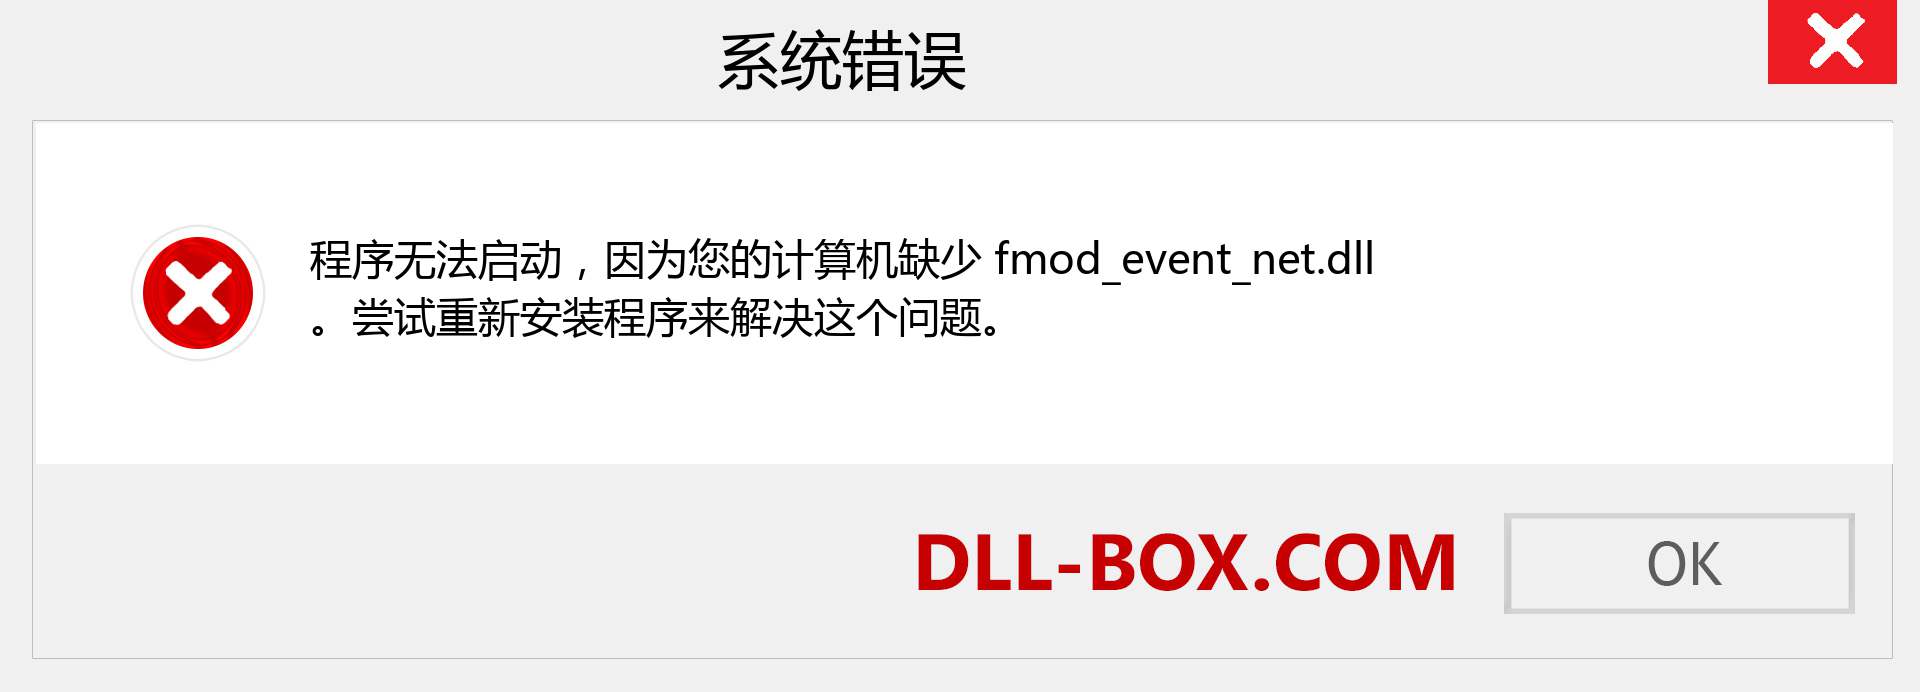 fmod_event_net.dll 文件丢失？。 适用于 Windows 7、8、10 的下载 - 修复 Windows、照片、图像上的 fmod_event_net dll 丢失错误